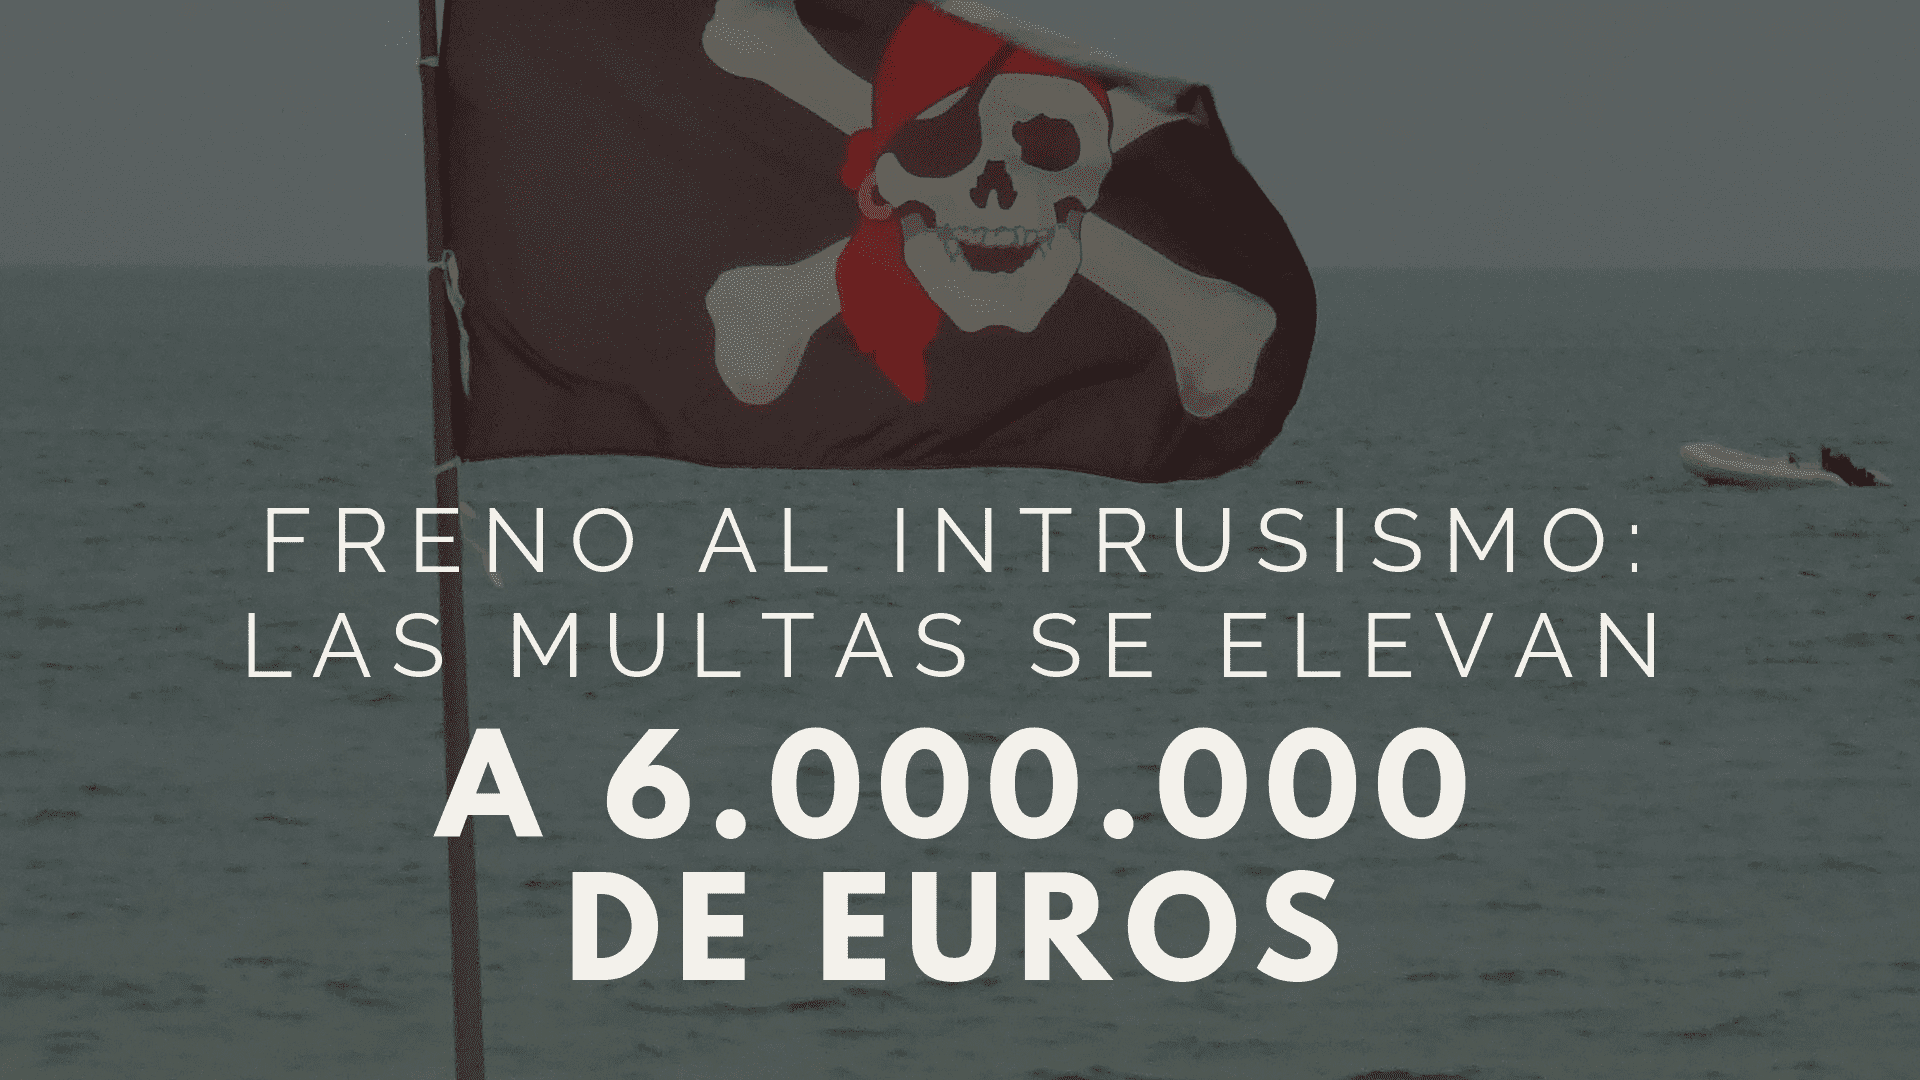 Intrusismo: las infracciones leves pasan a ser graves y tendrán multas de hasta seis millones de euros